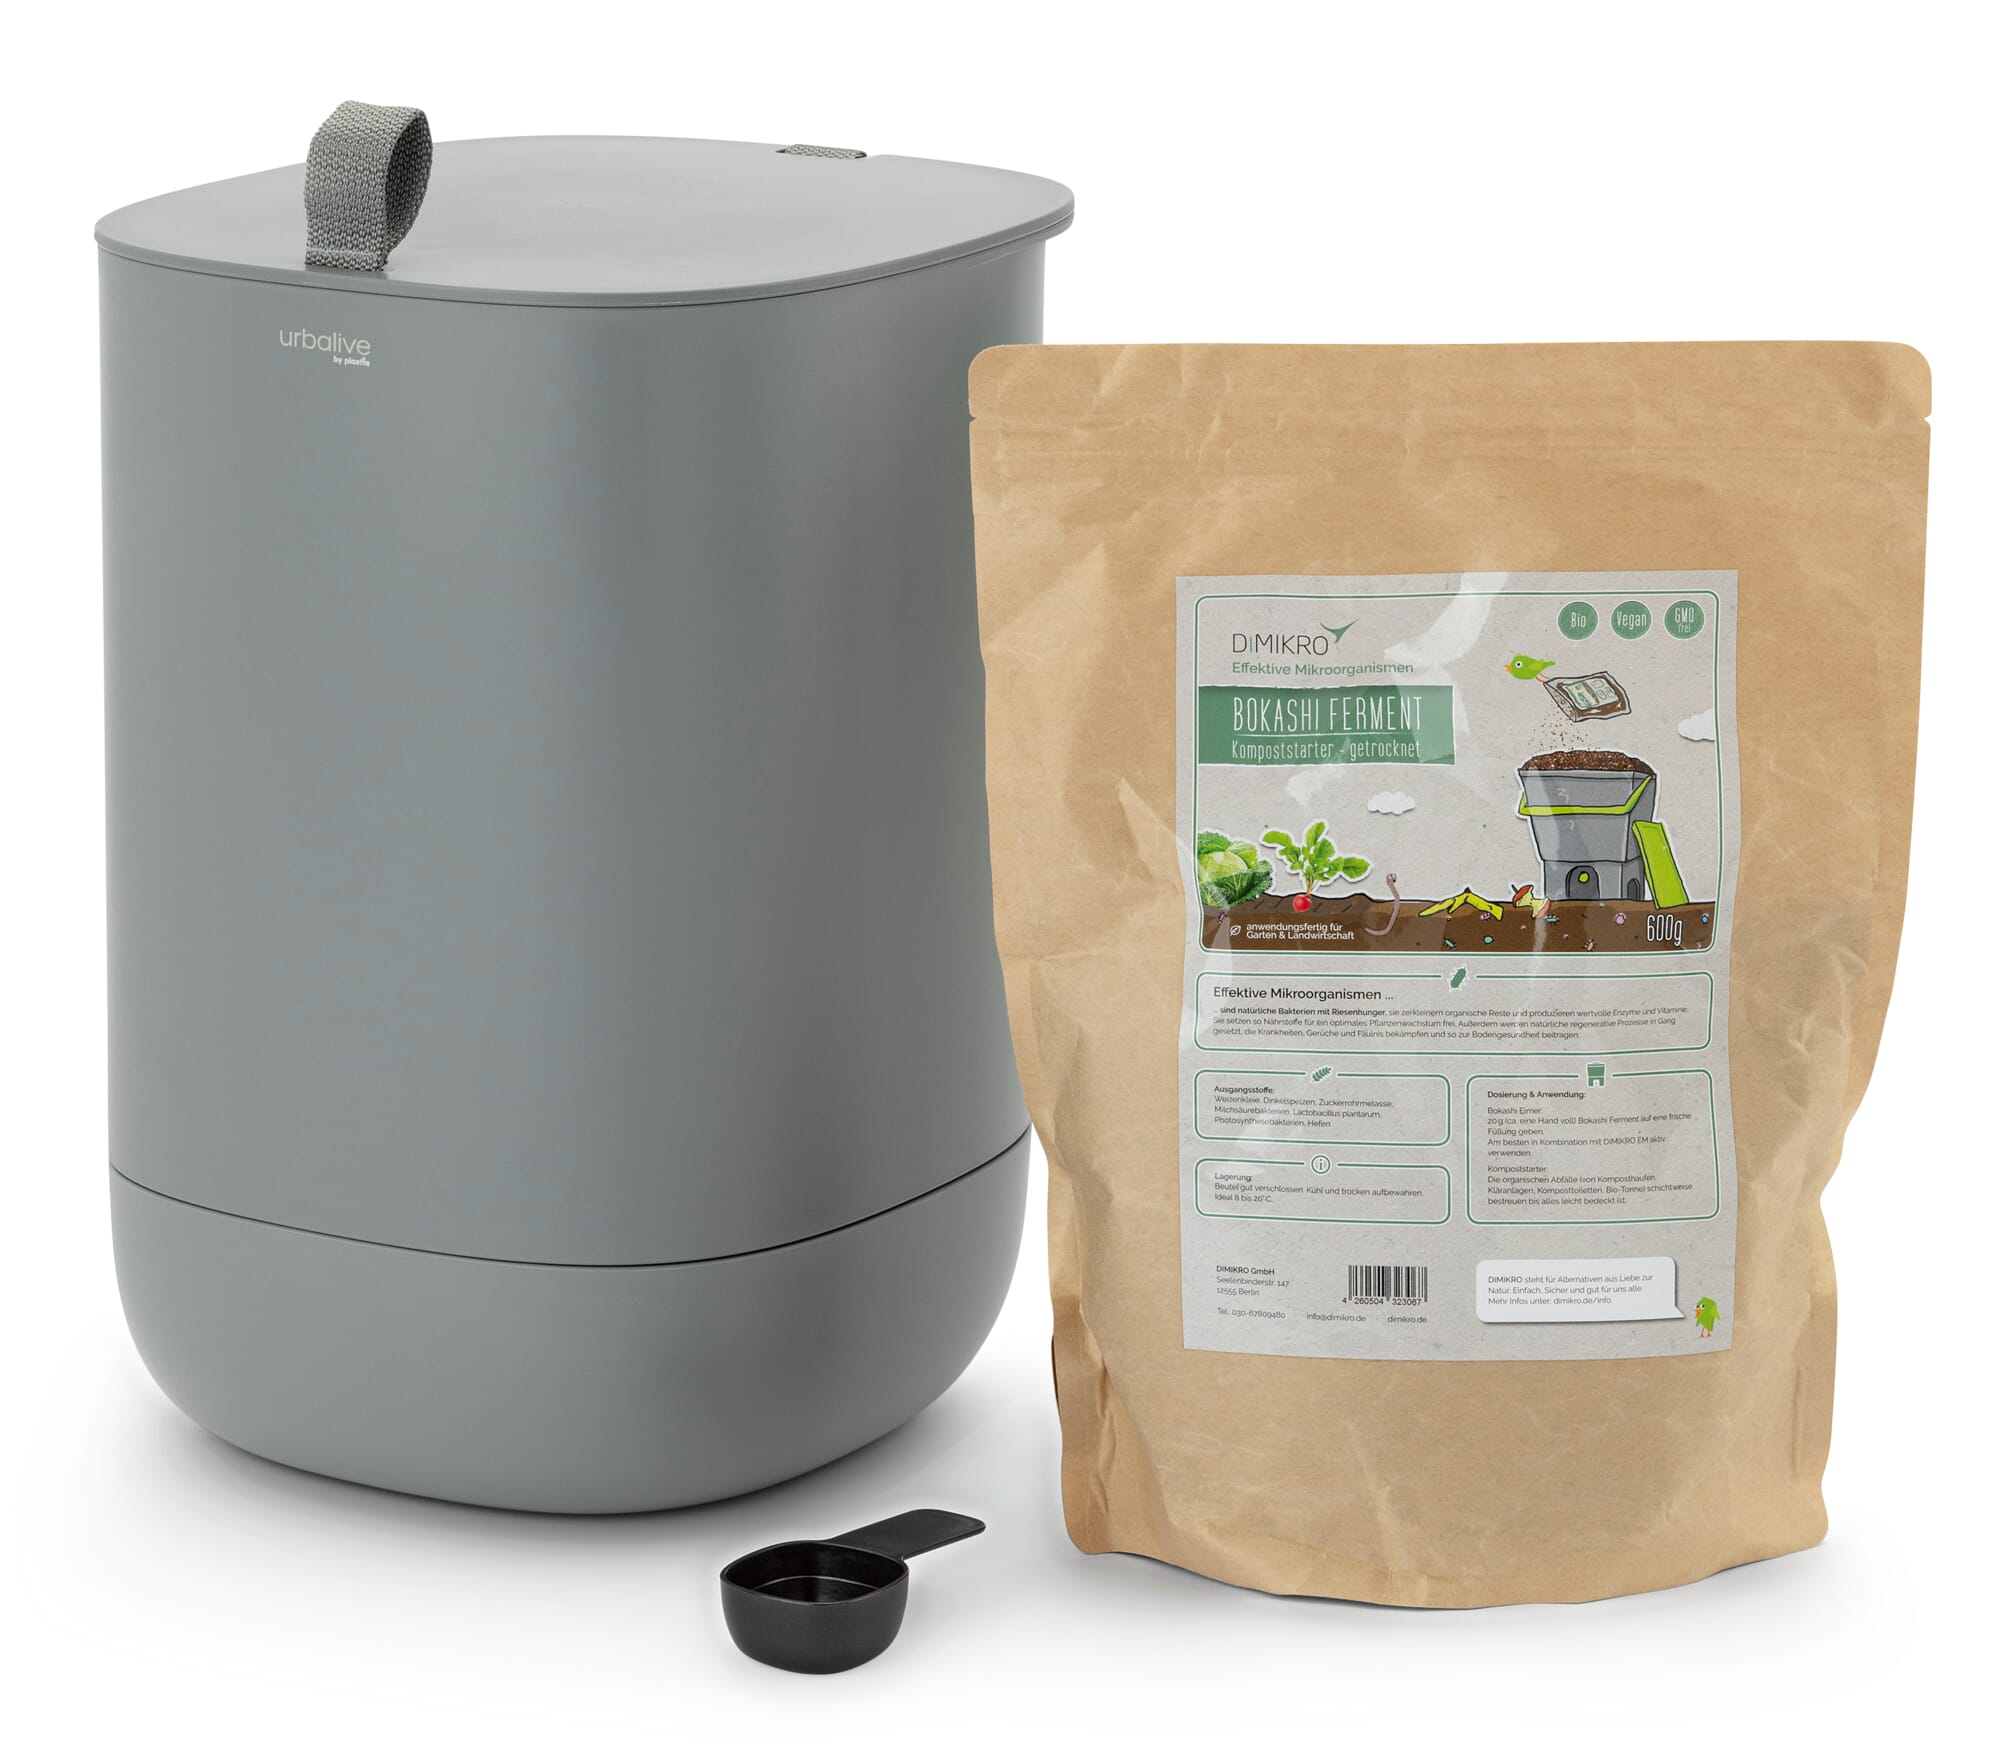 Kompost umsetzen und Kompostmieten abdecken